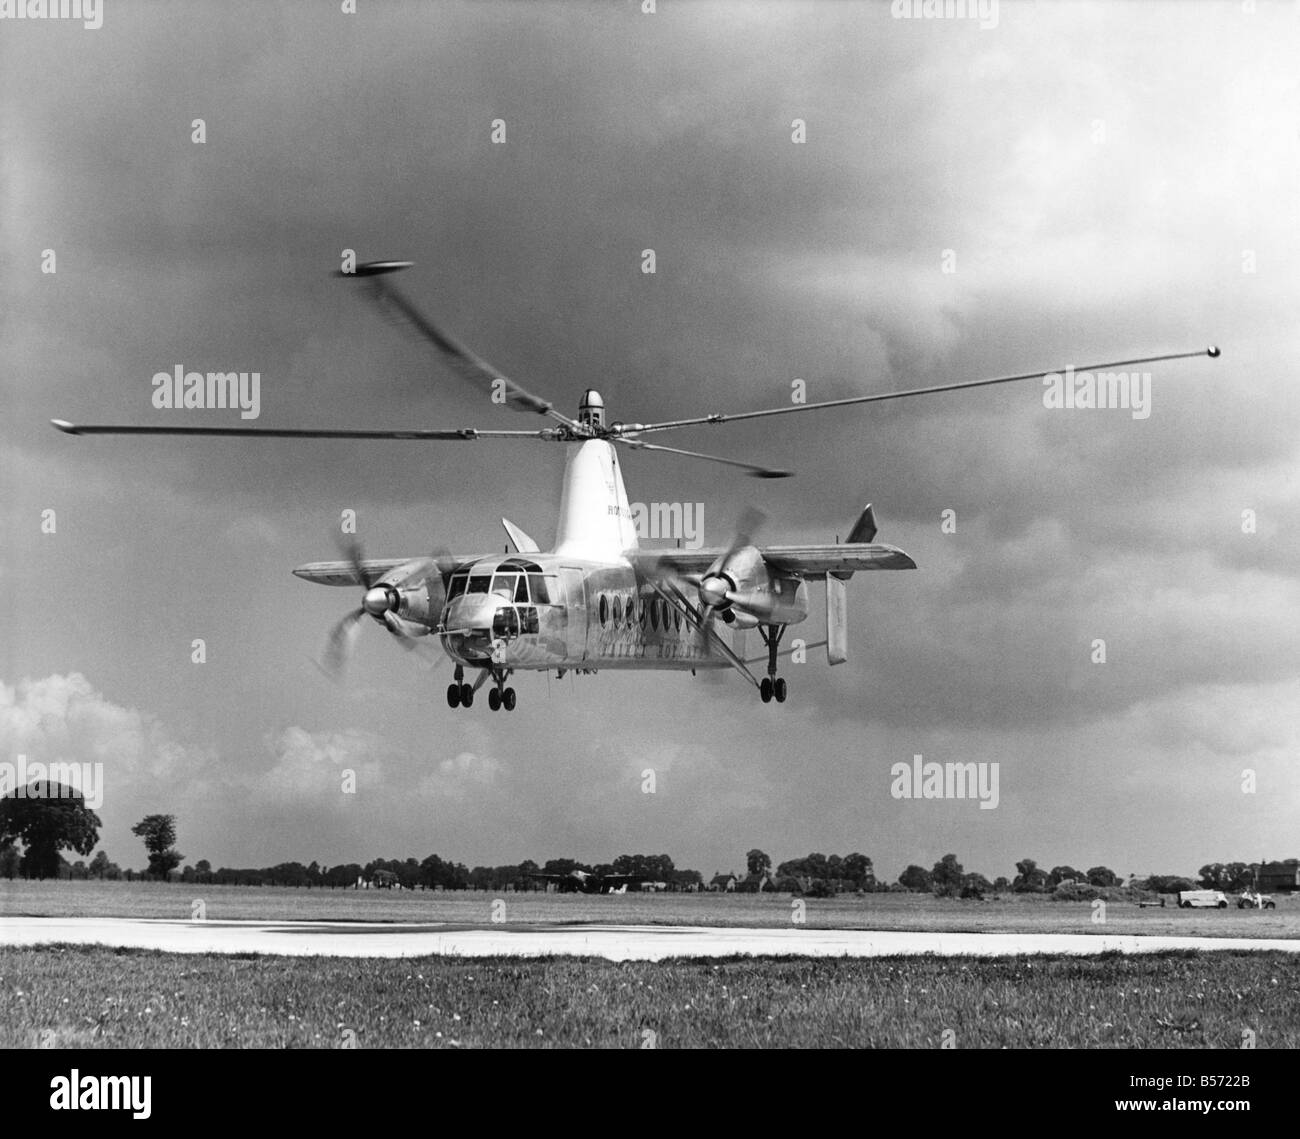 Das Verkehrsflugzeug der Welt erste vertikale abheben, die britische Fairey Rotodyne zeigte sich heute auf White Waltham Flugplatz, wo es hier im Flug zu sehen ist. ; Juni 1958; P004259 Stockfoto